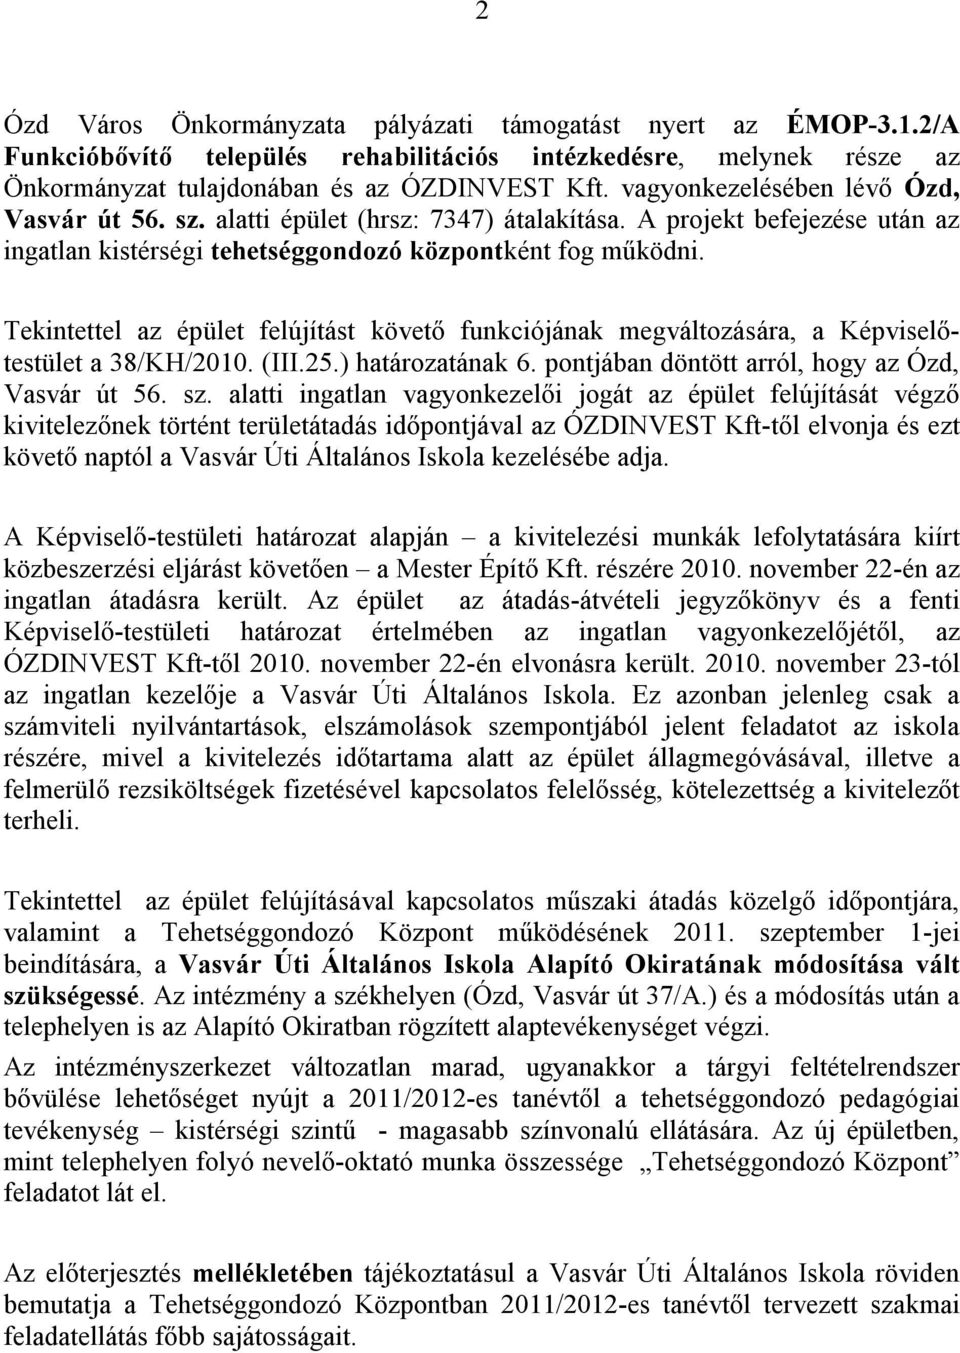 Tekintettel az épület felújítást követő funkciójának megváltozására, a Képviselőtestület a 38/KH/2010. (III.25.) határozatának 6. pontjában döntött arról, hogy az Ózd, Vasvár út 56. sz.